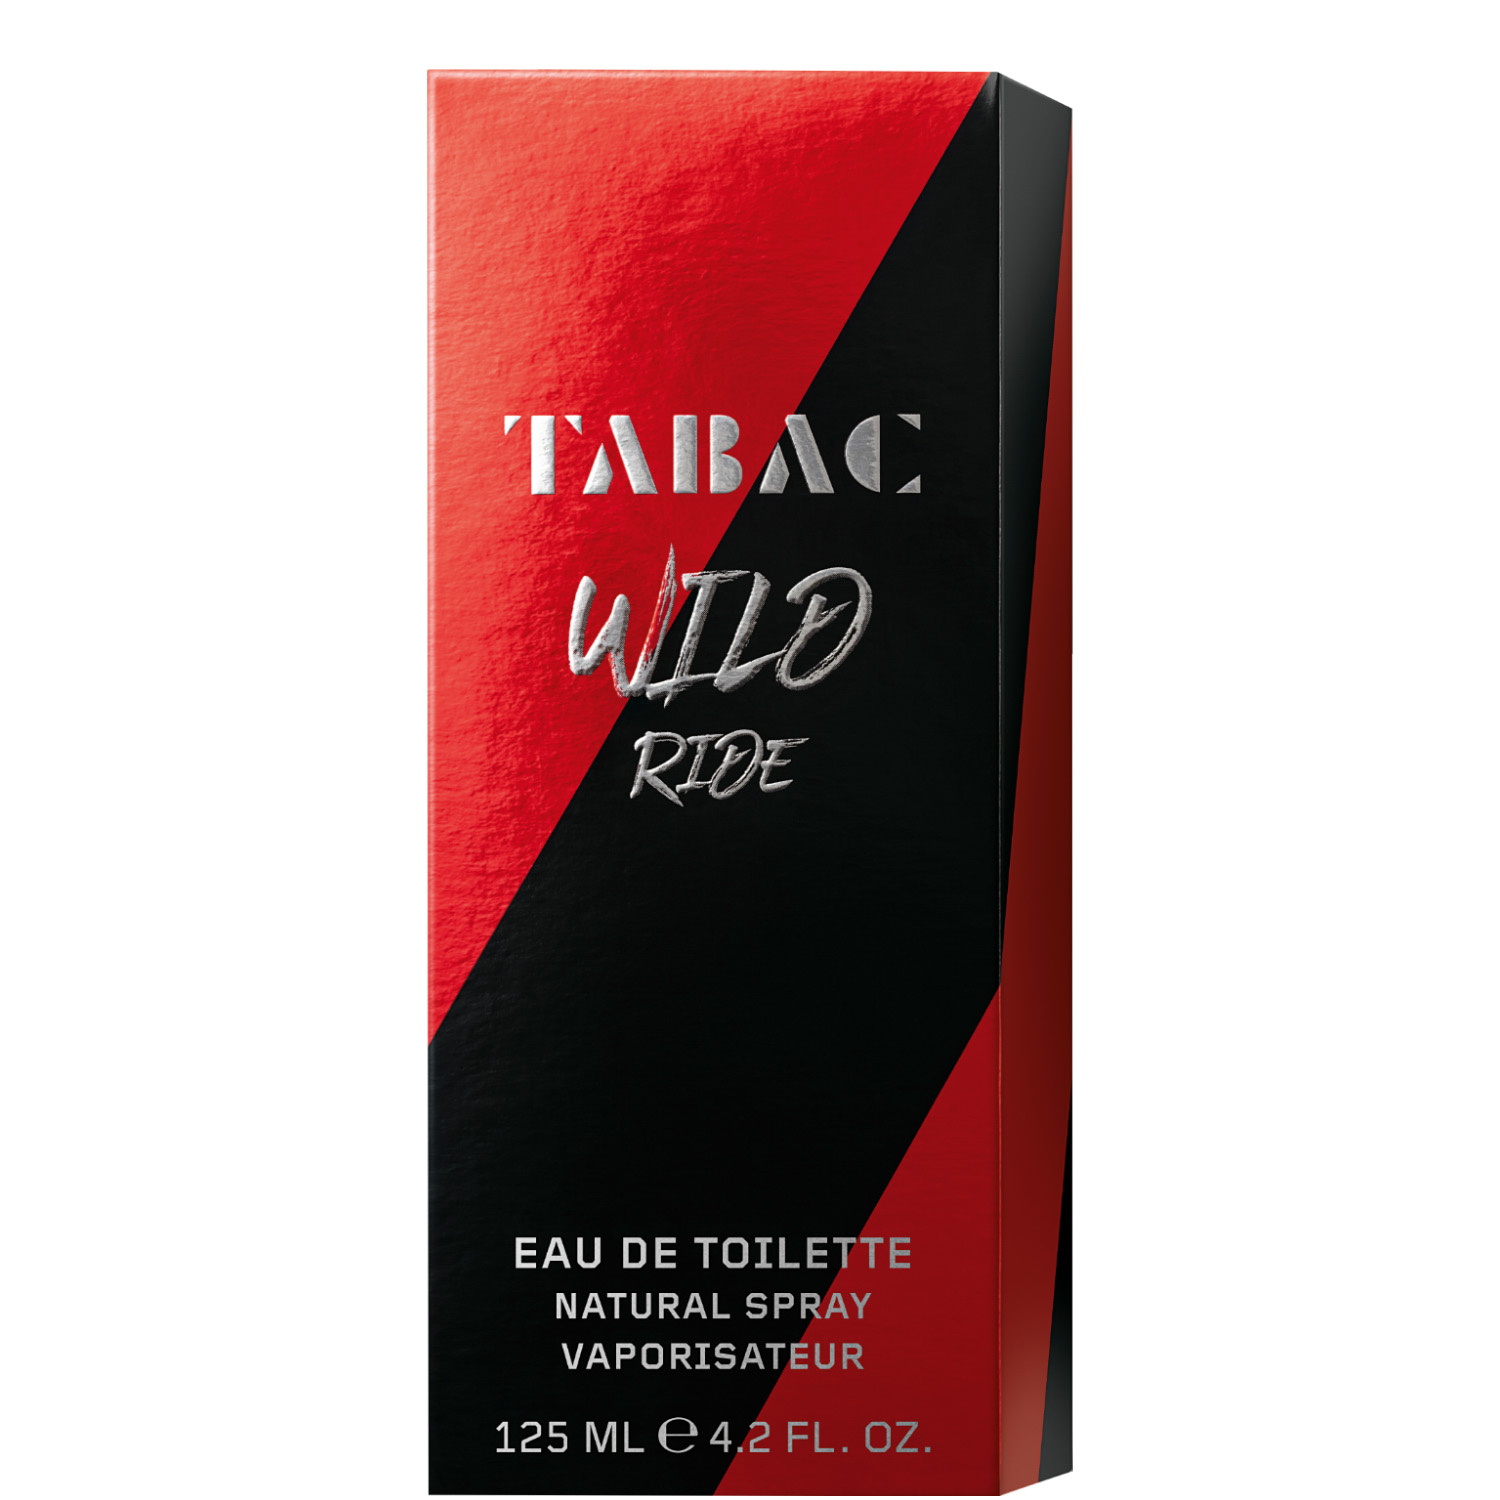 Tabac Wild Ride Eau de Toilette 125ml